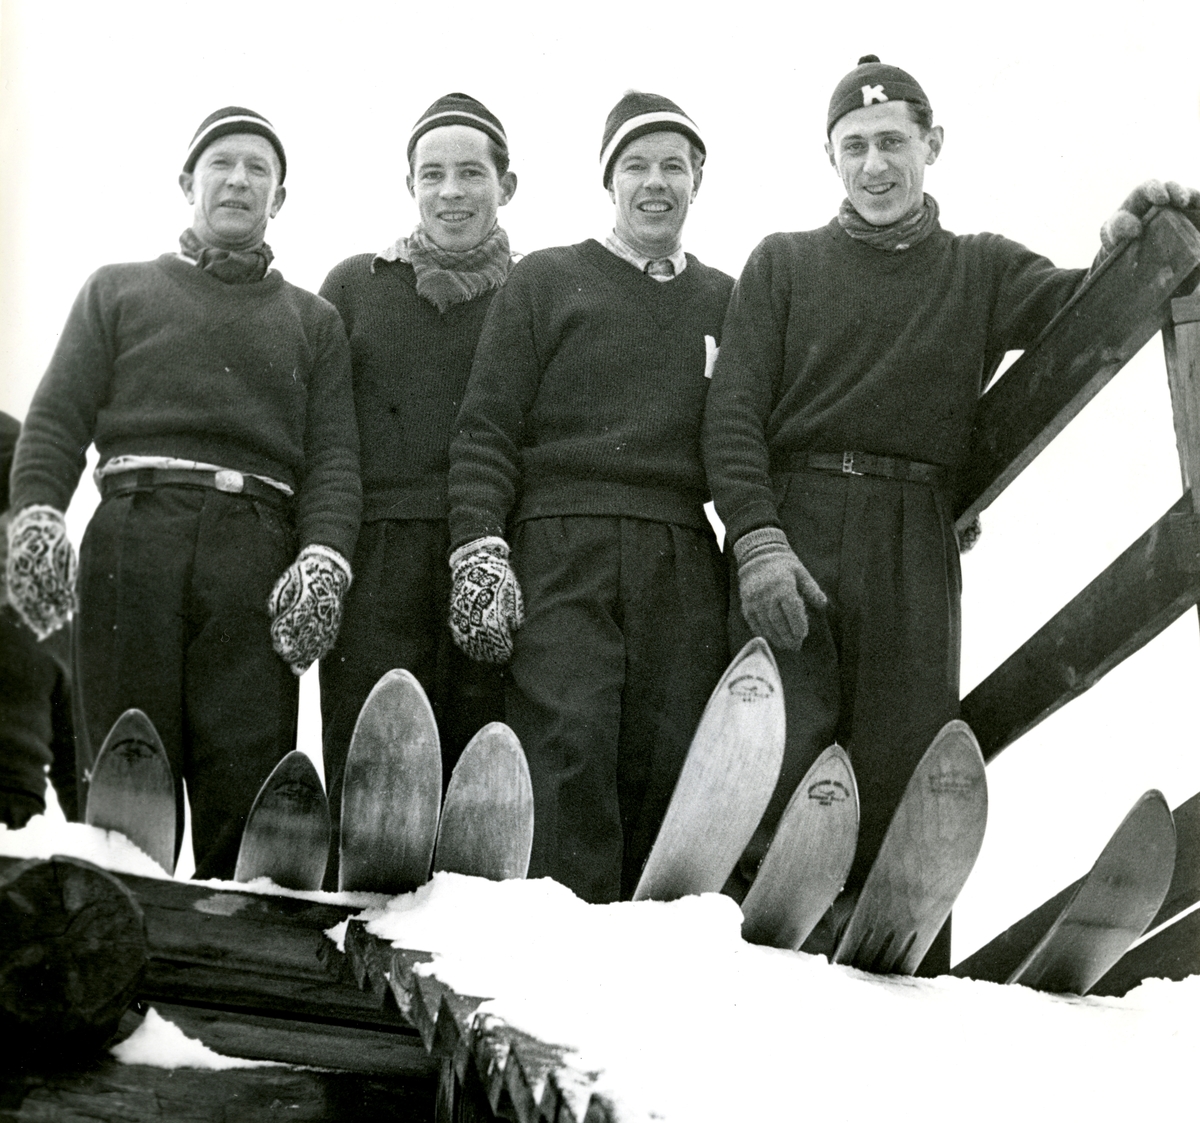 Kongsberg skiers in their prime